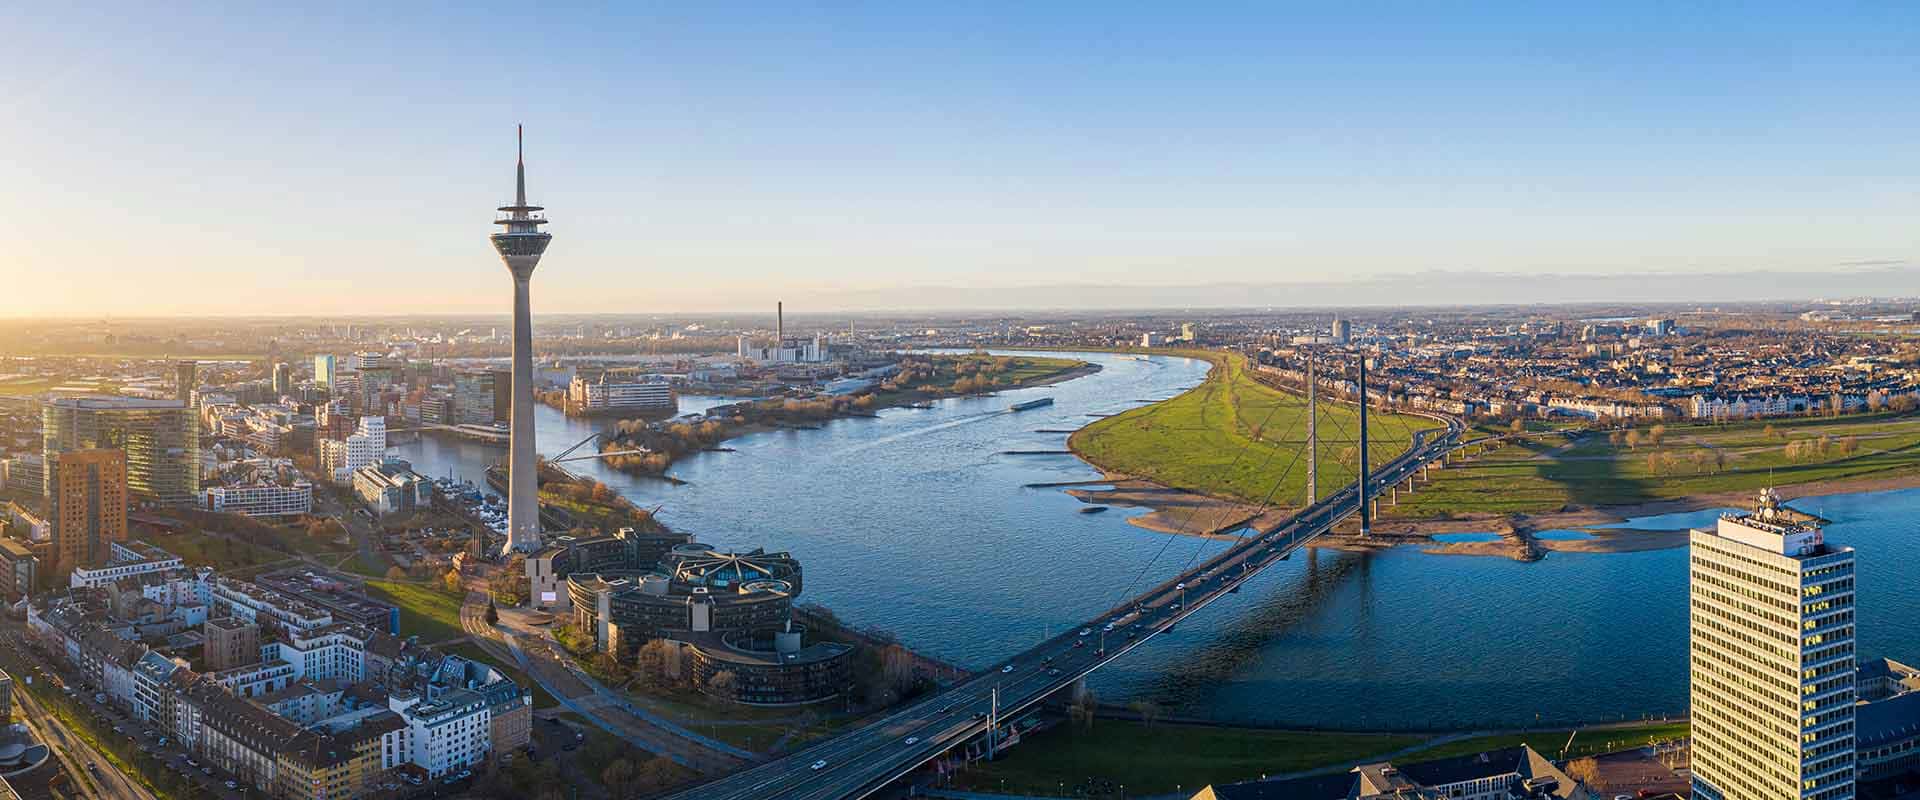 Klimapakt Düsseldorf: Lokale Initiativen für eine nachhaltige Zukunft